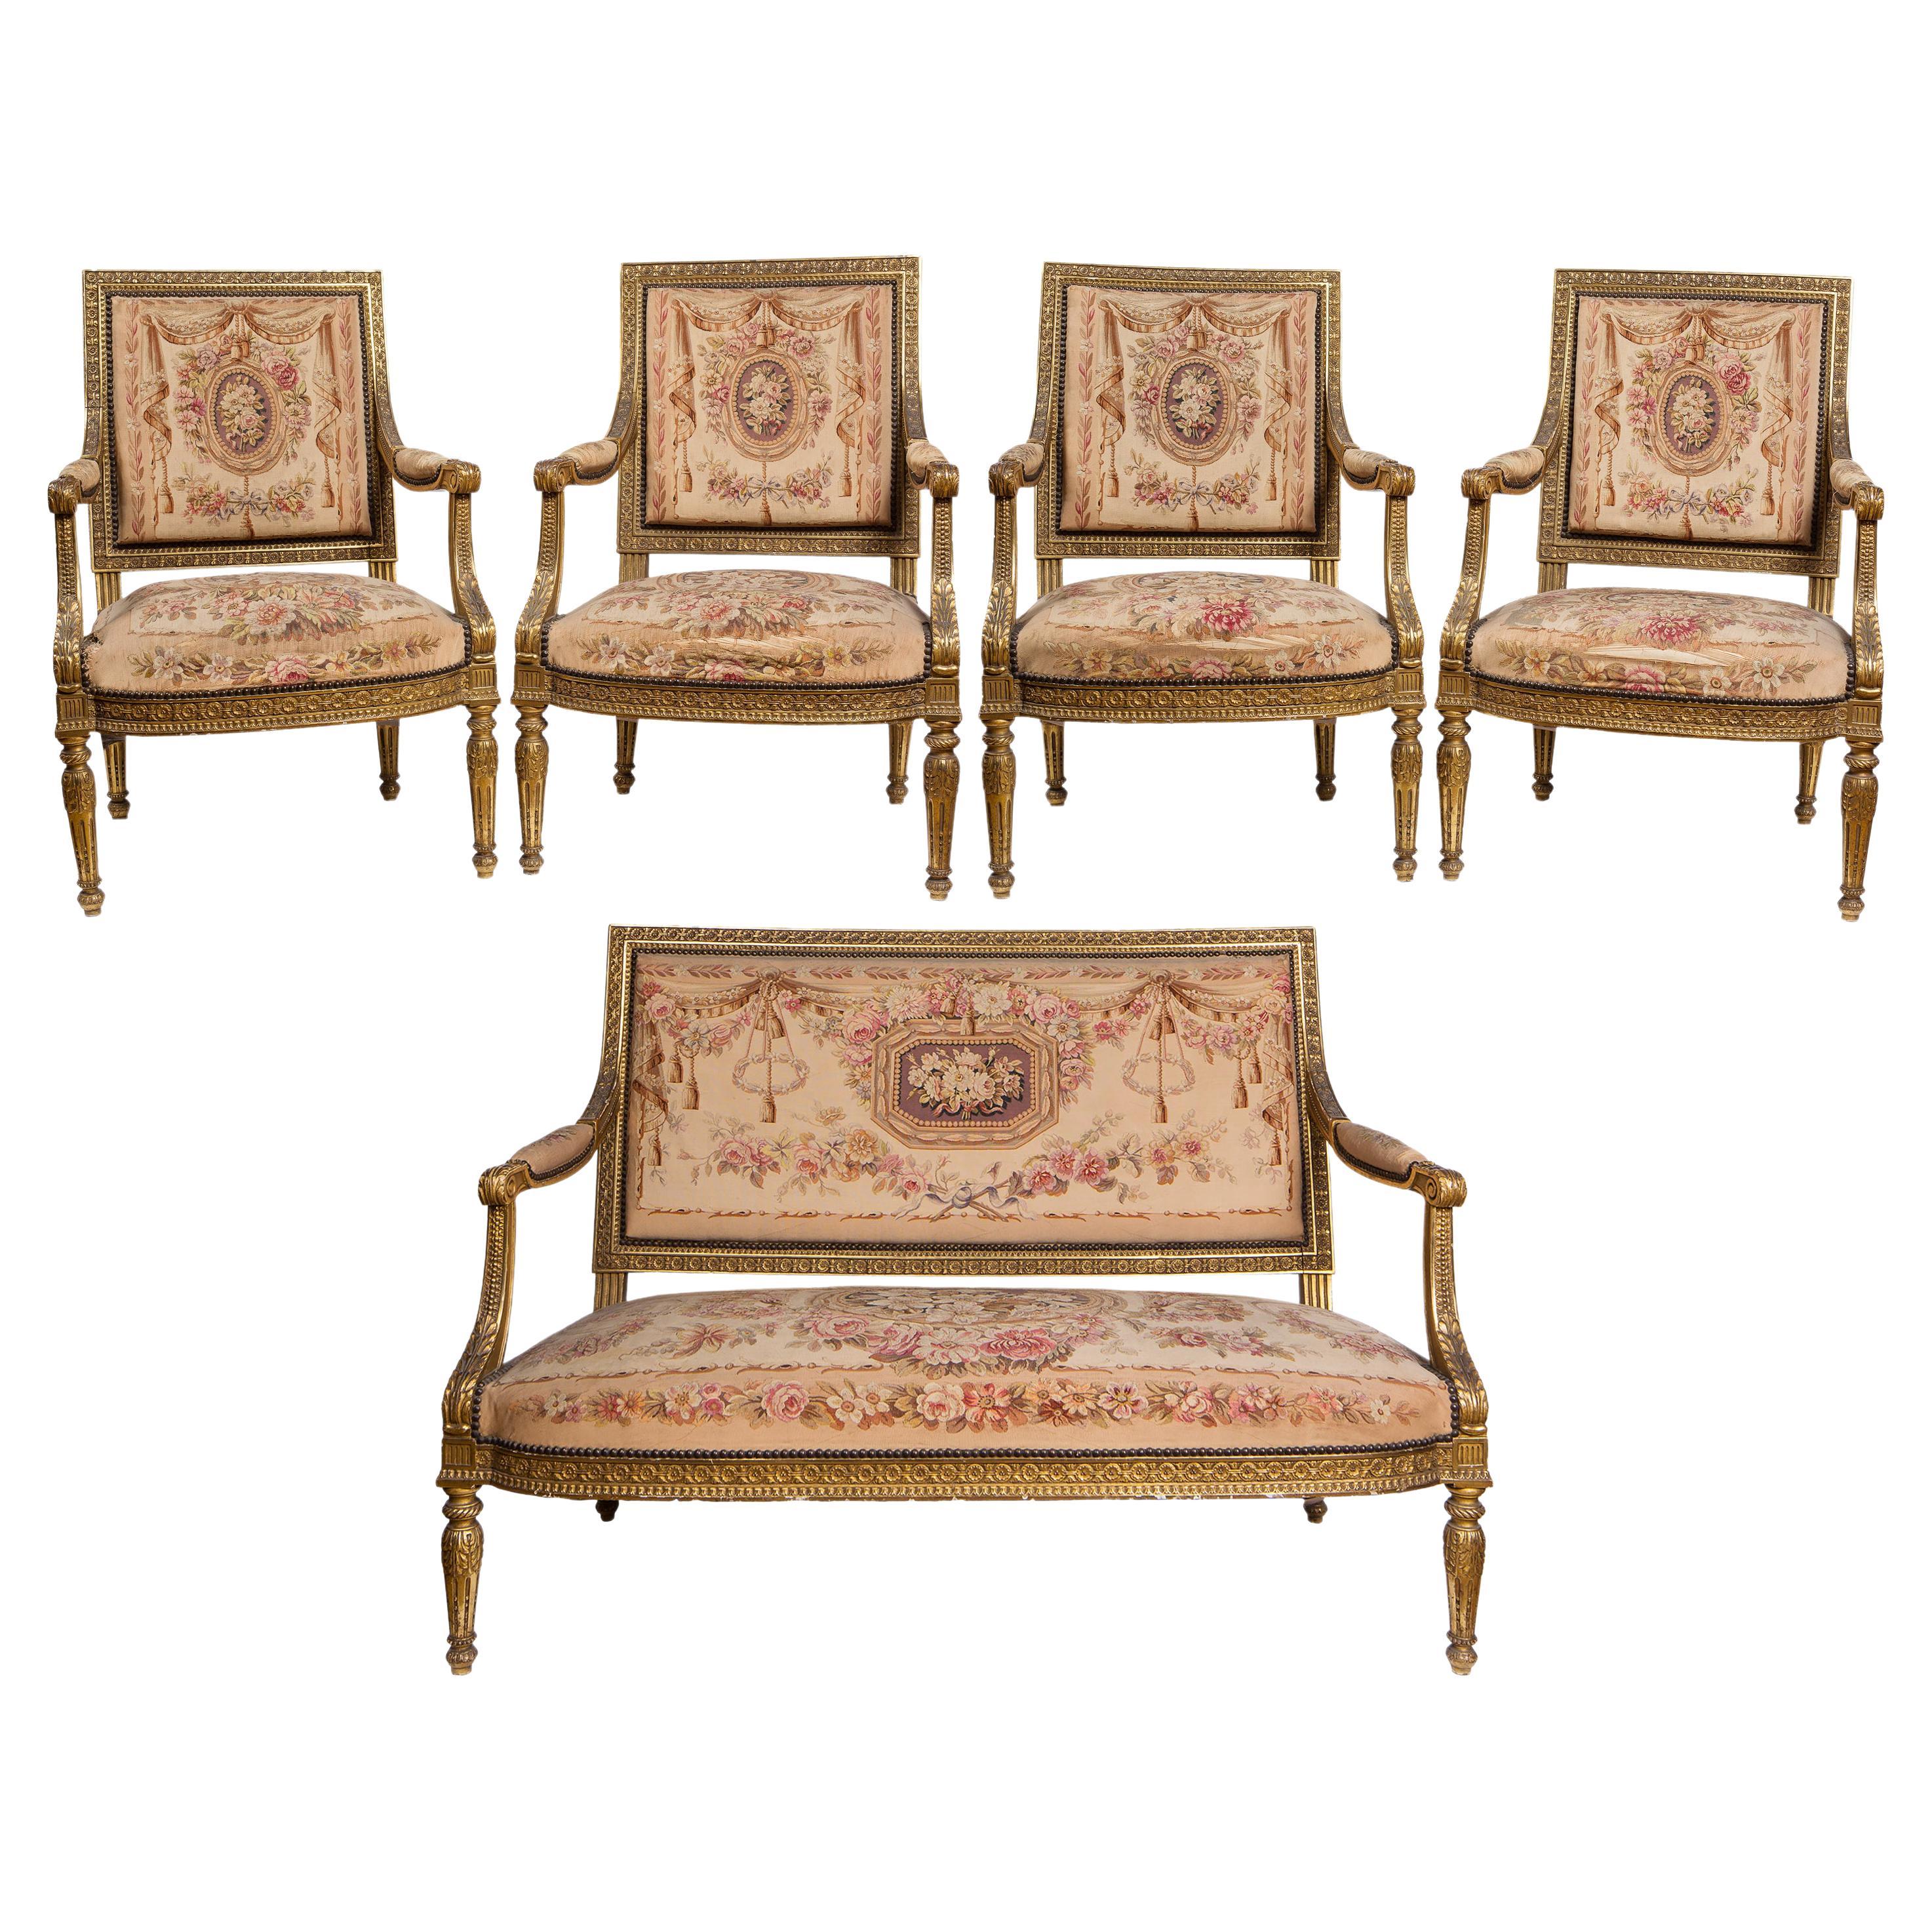 Antique Louis XVI Style 5 Piece Salon Suite, Sofa, 4 Chairs, Aubusson Upholstery